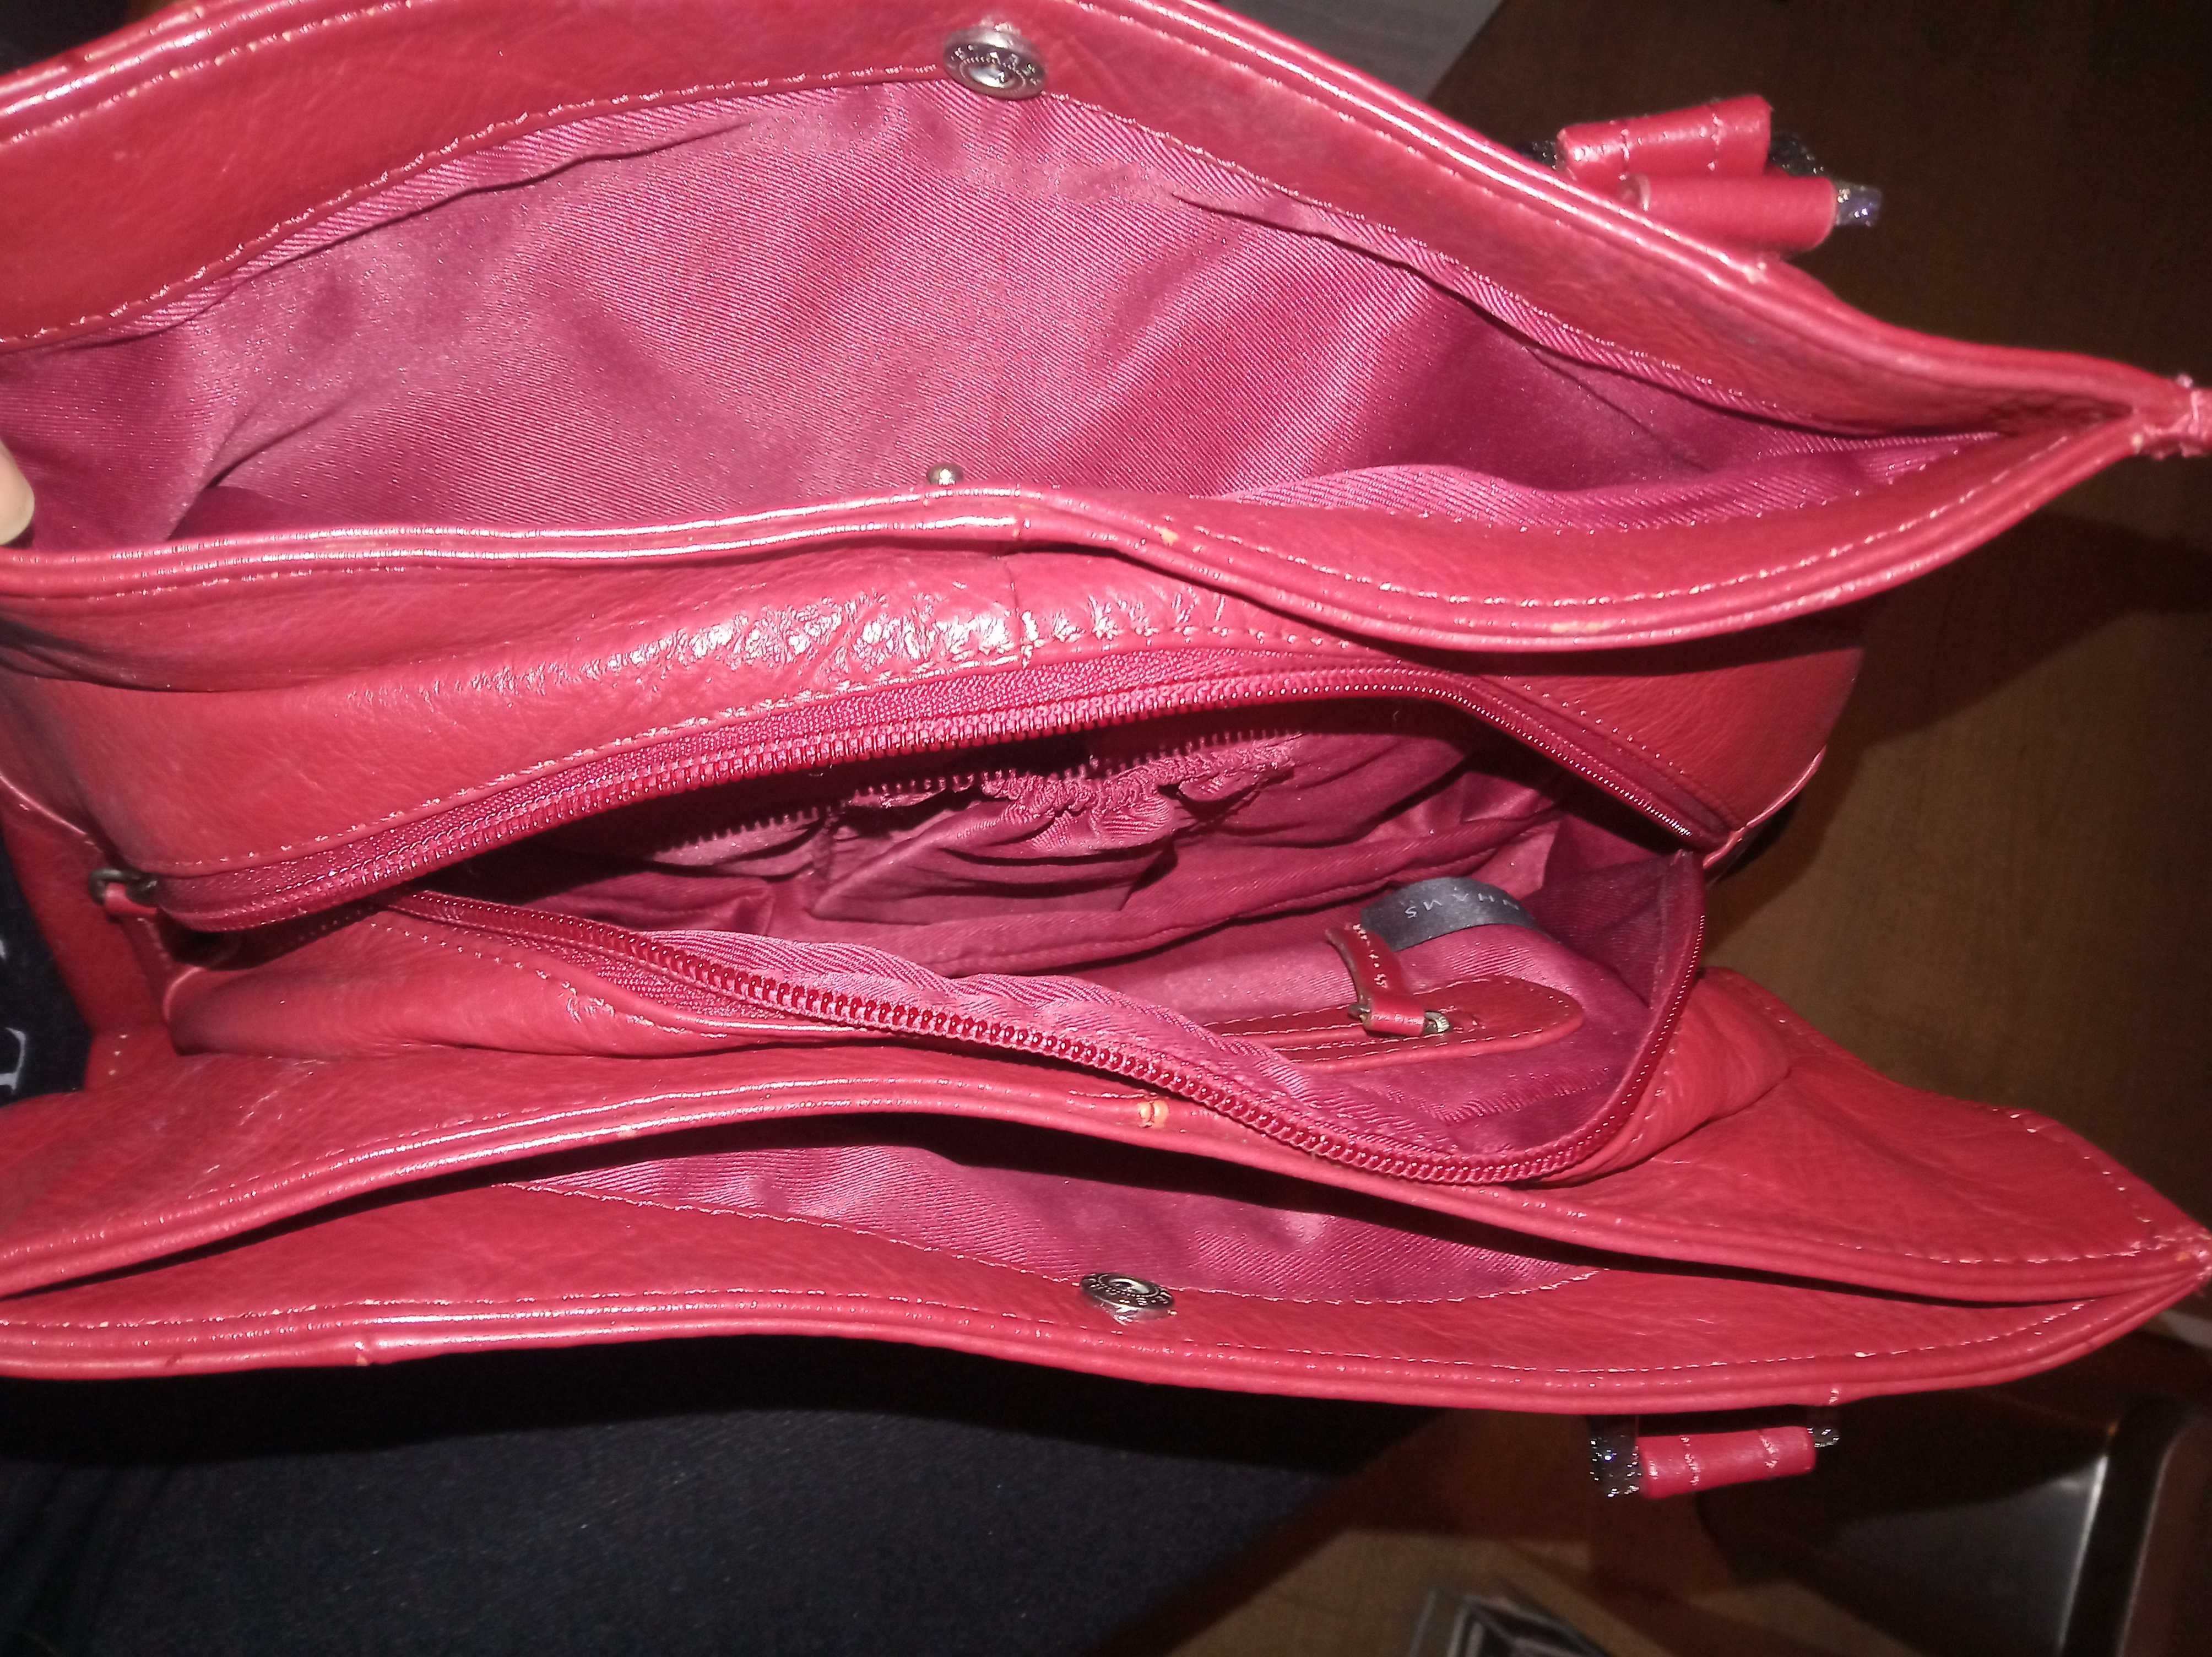 Дамски маркови чанти от естествена кожа, черна, червена